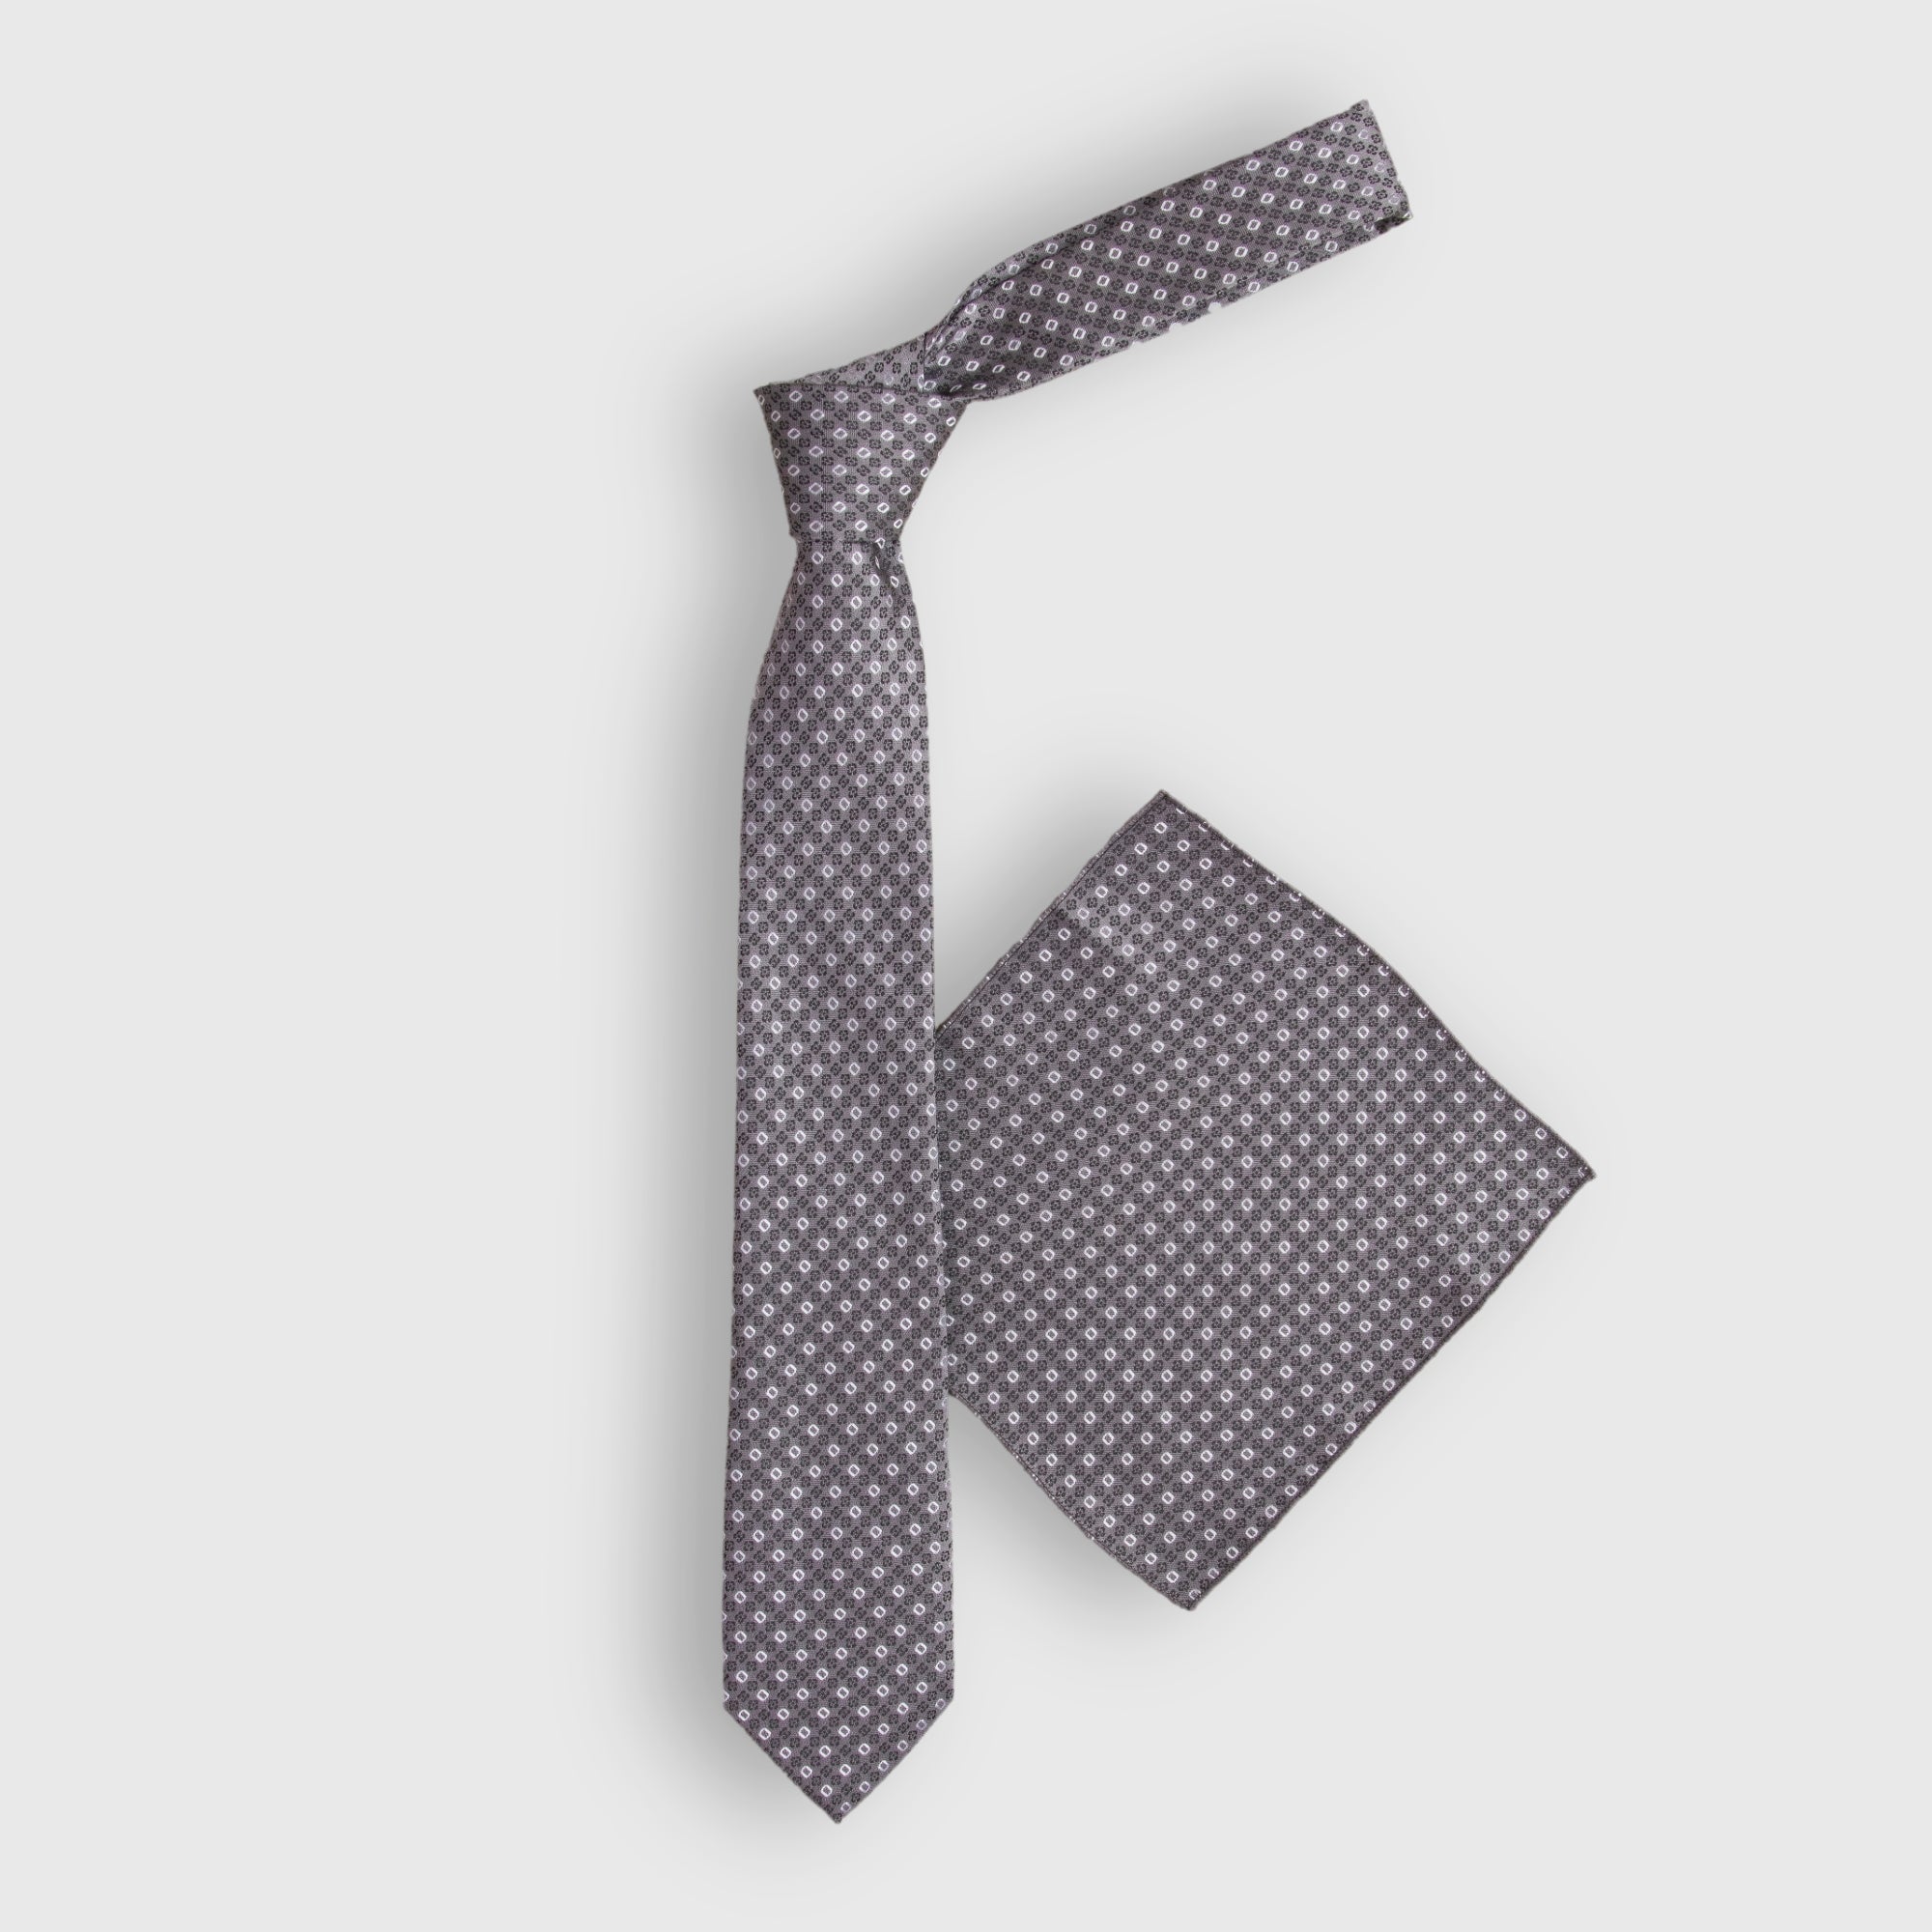 Slate Printed Tie